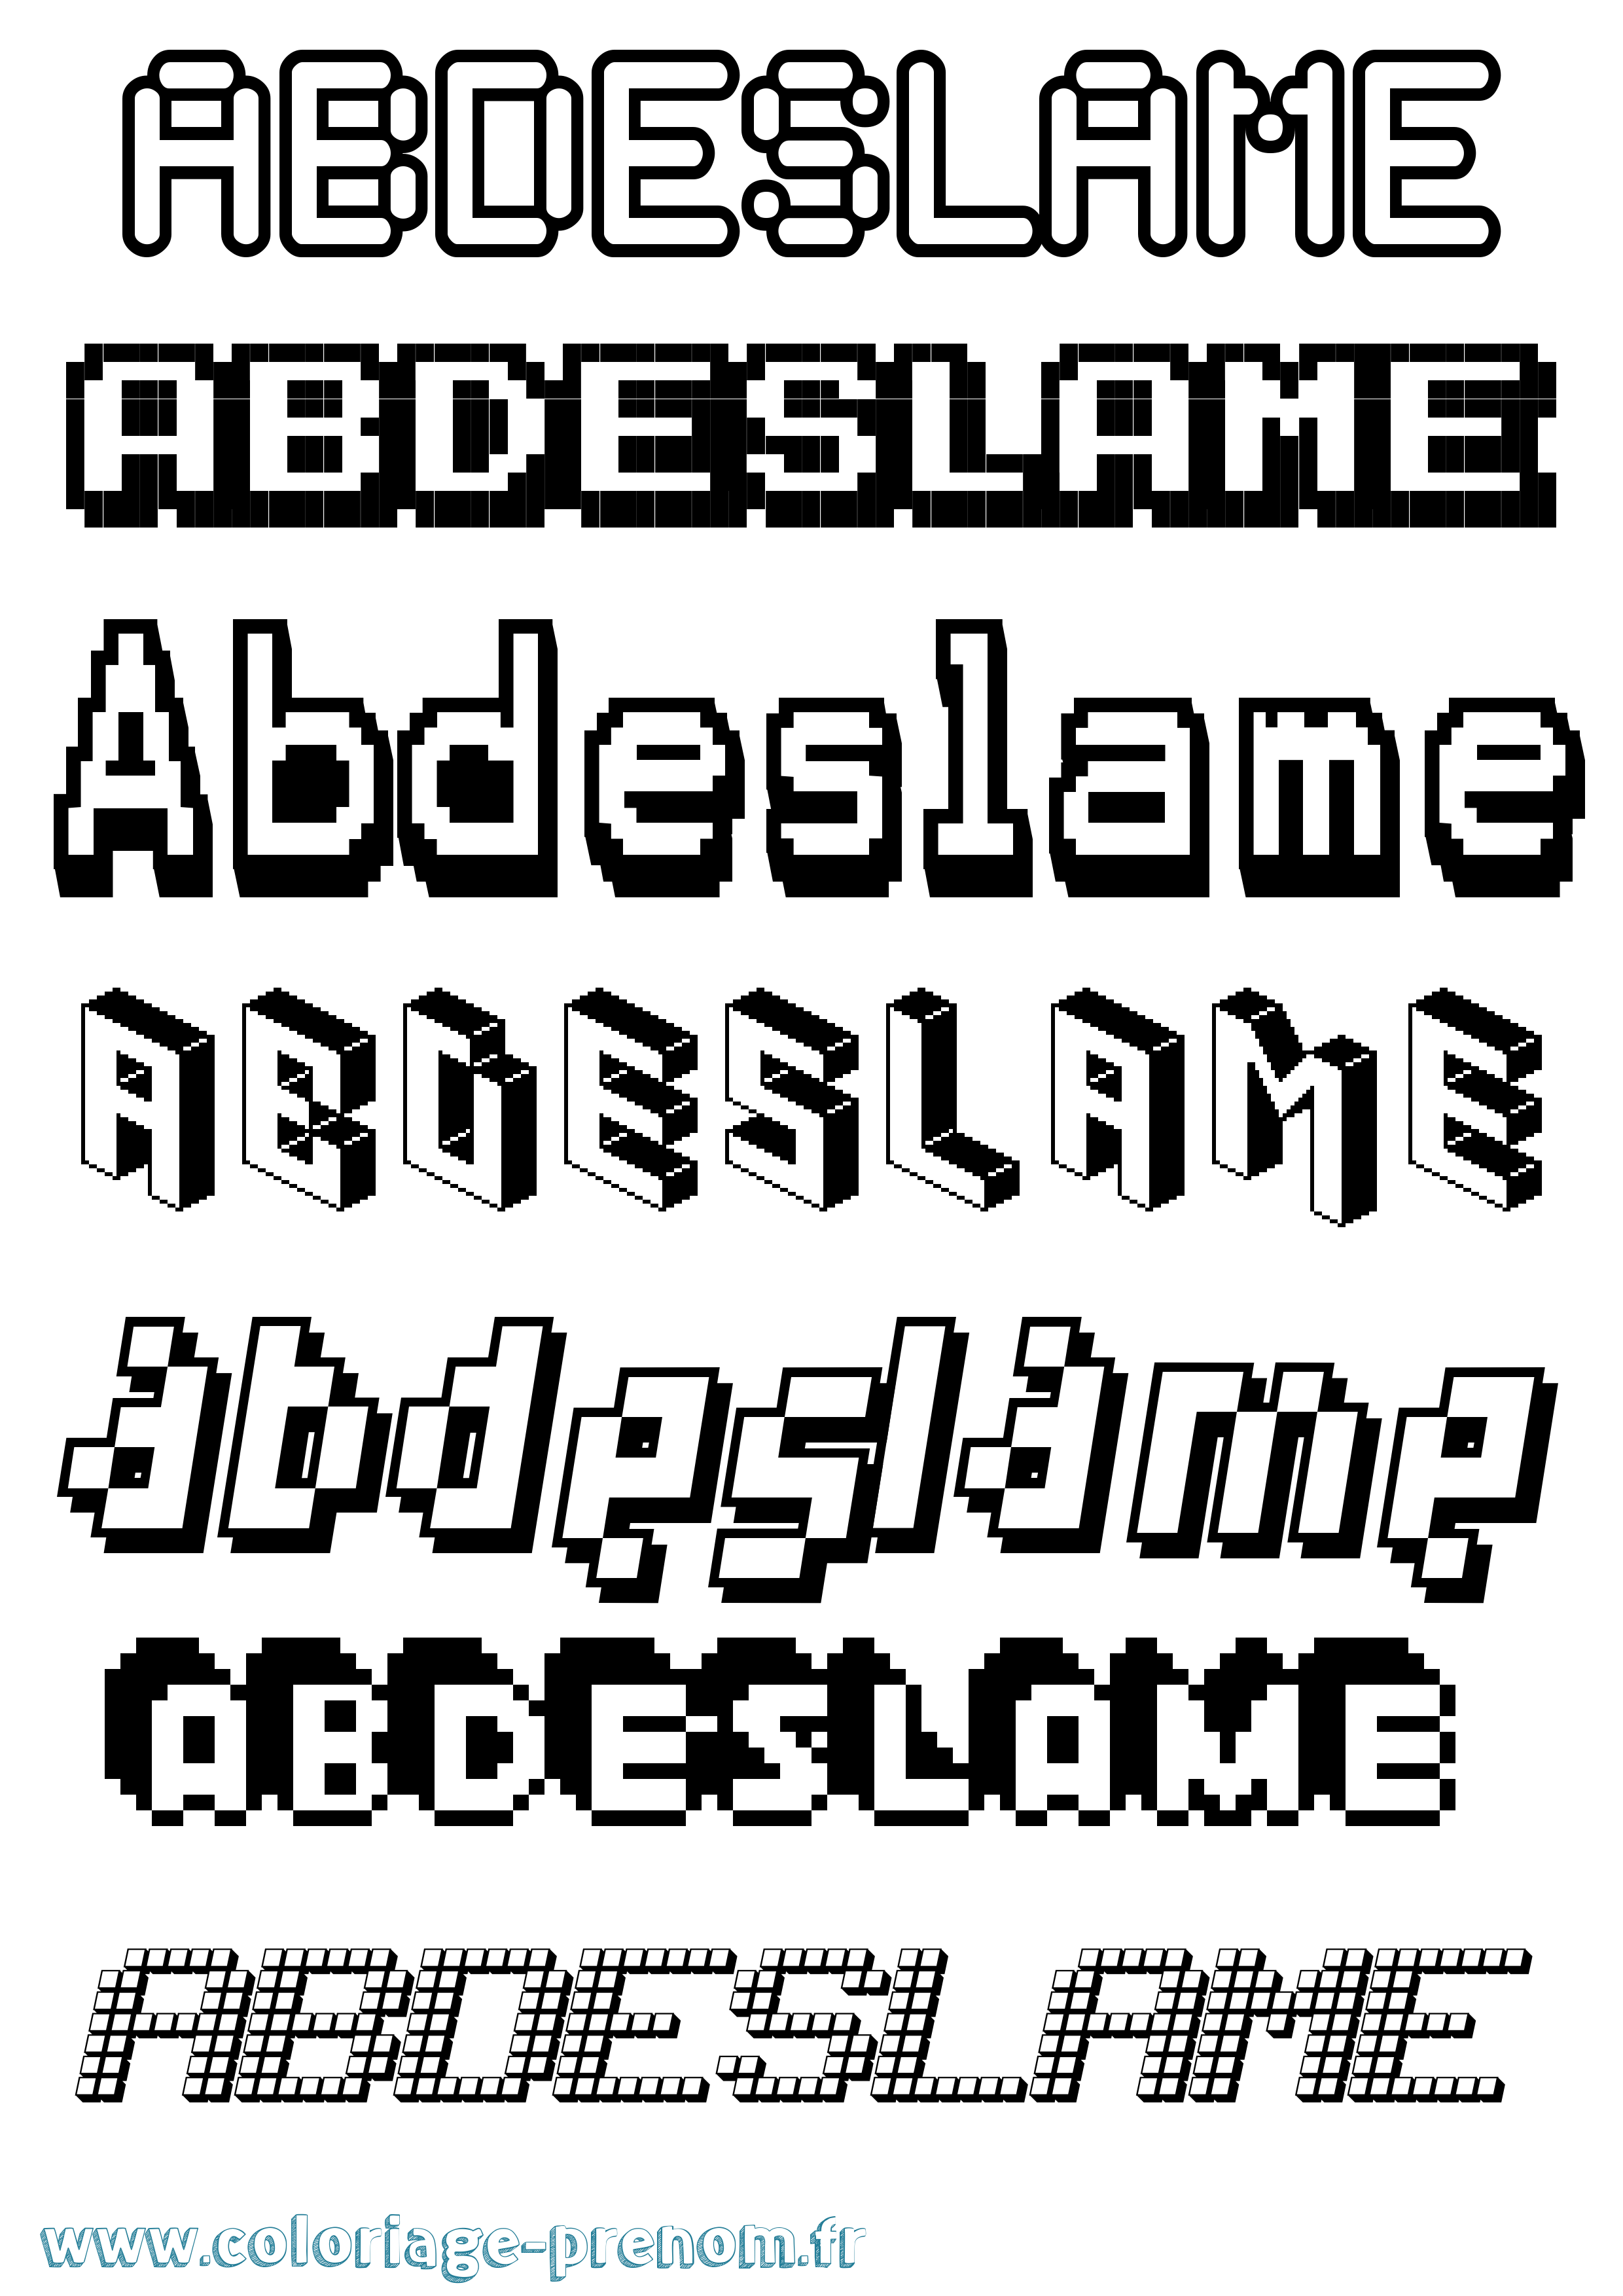 Coloriage prénom Abdeslame Pixel